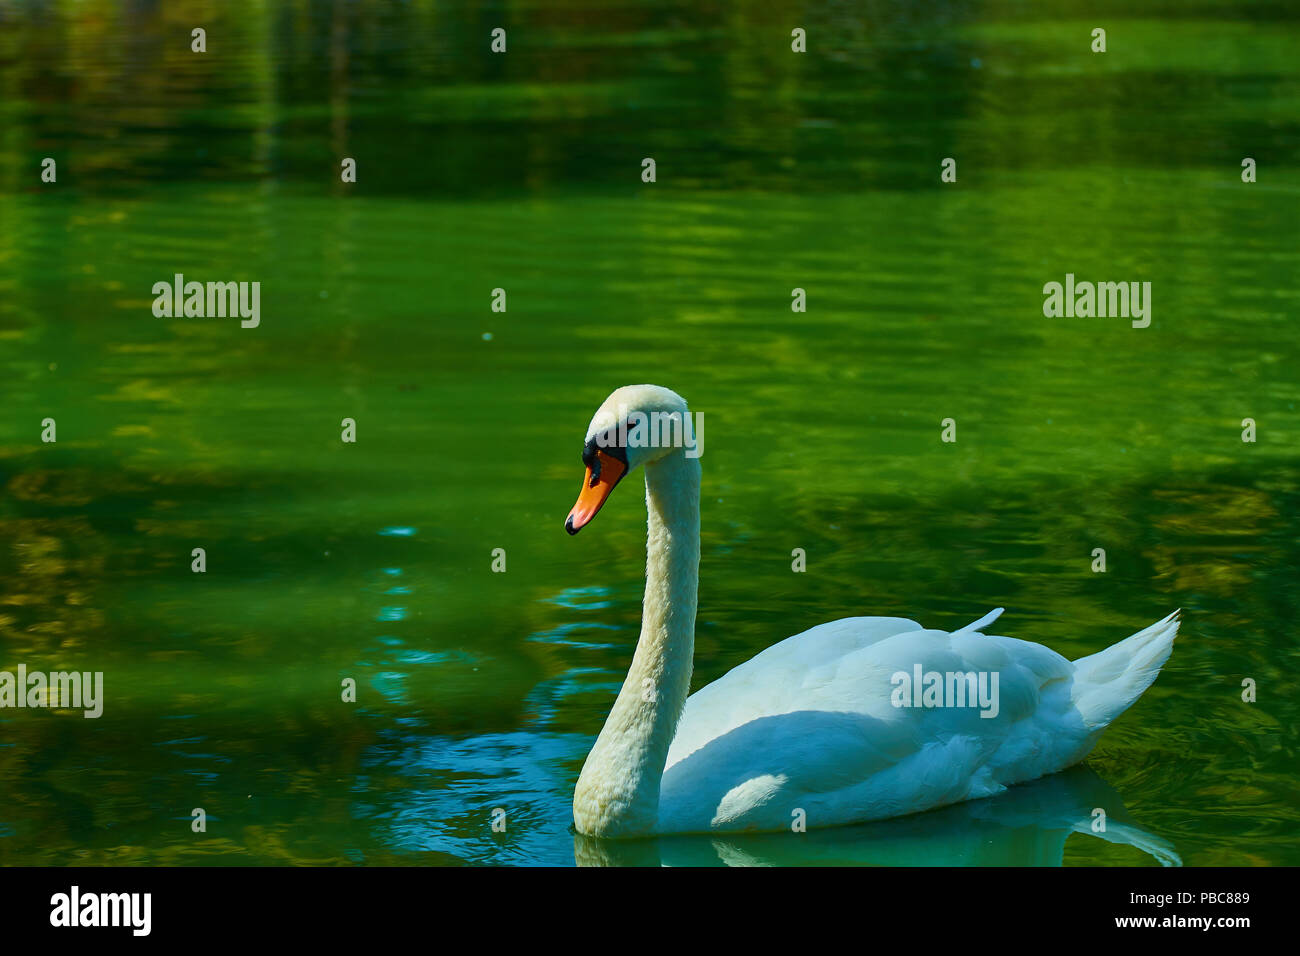 White swan on the lake Stock Photo